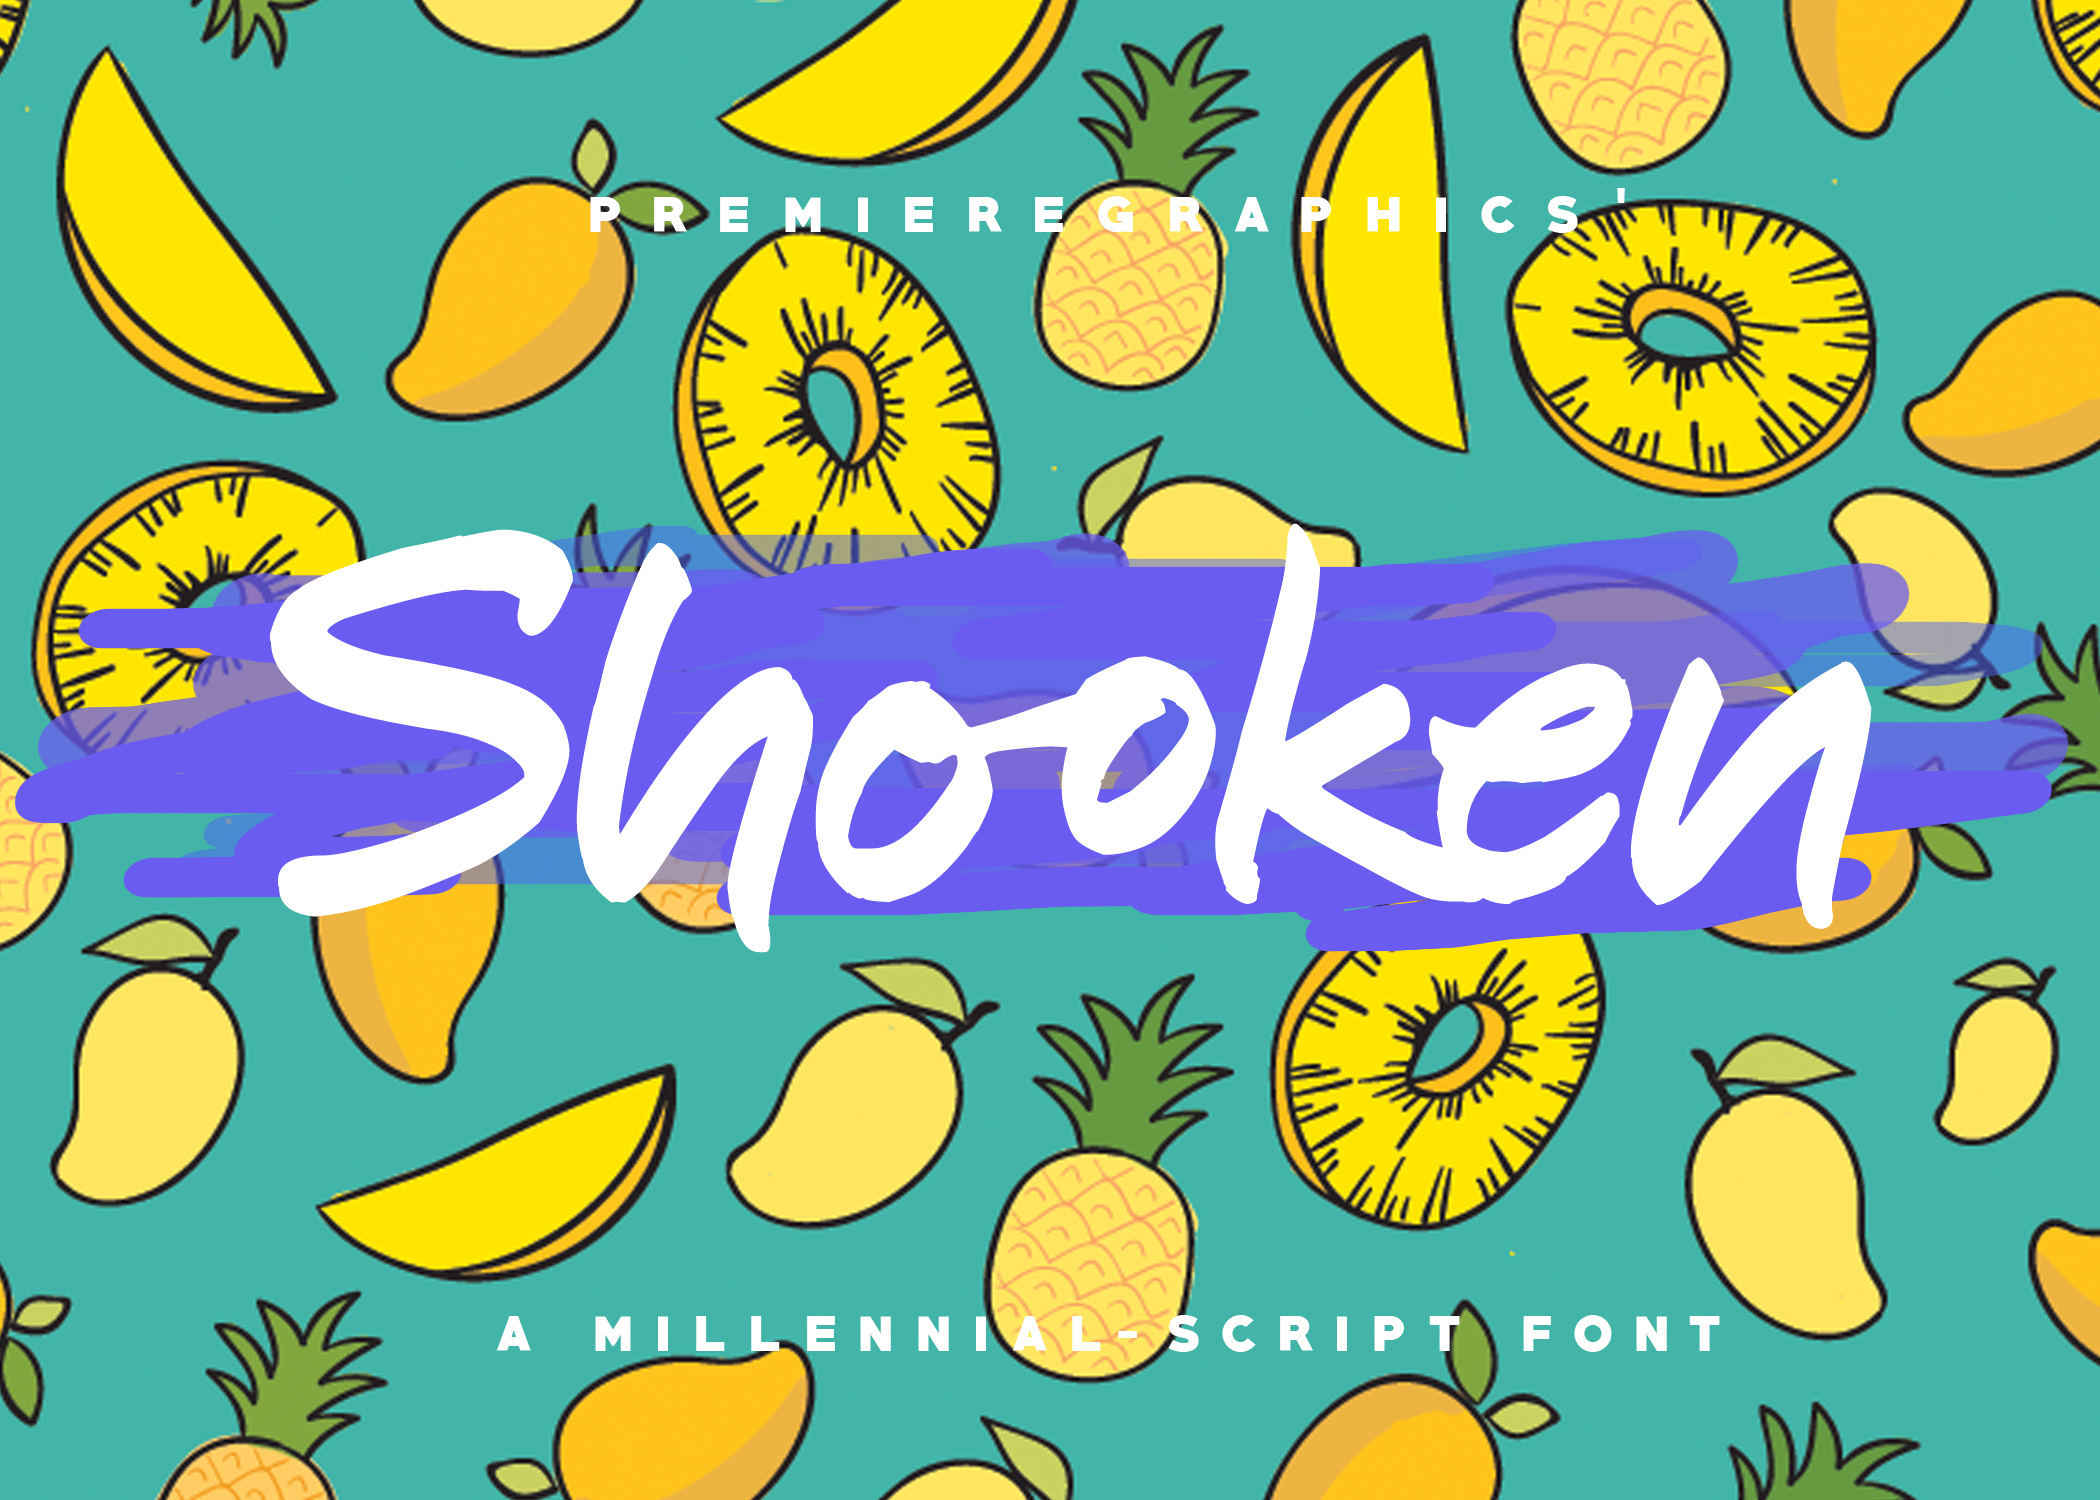 Shooken Font